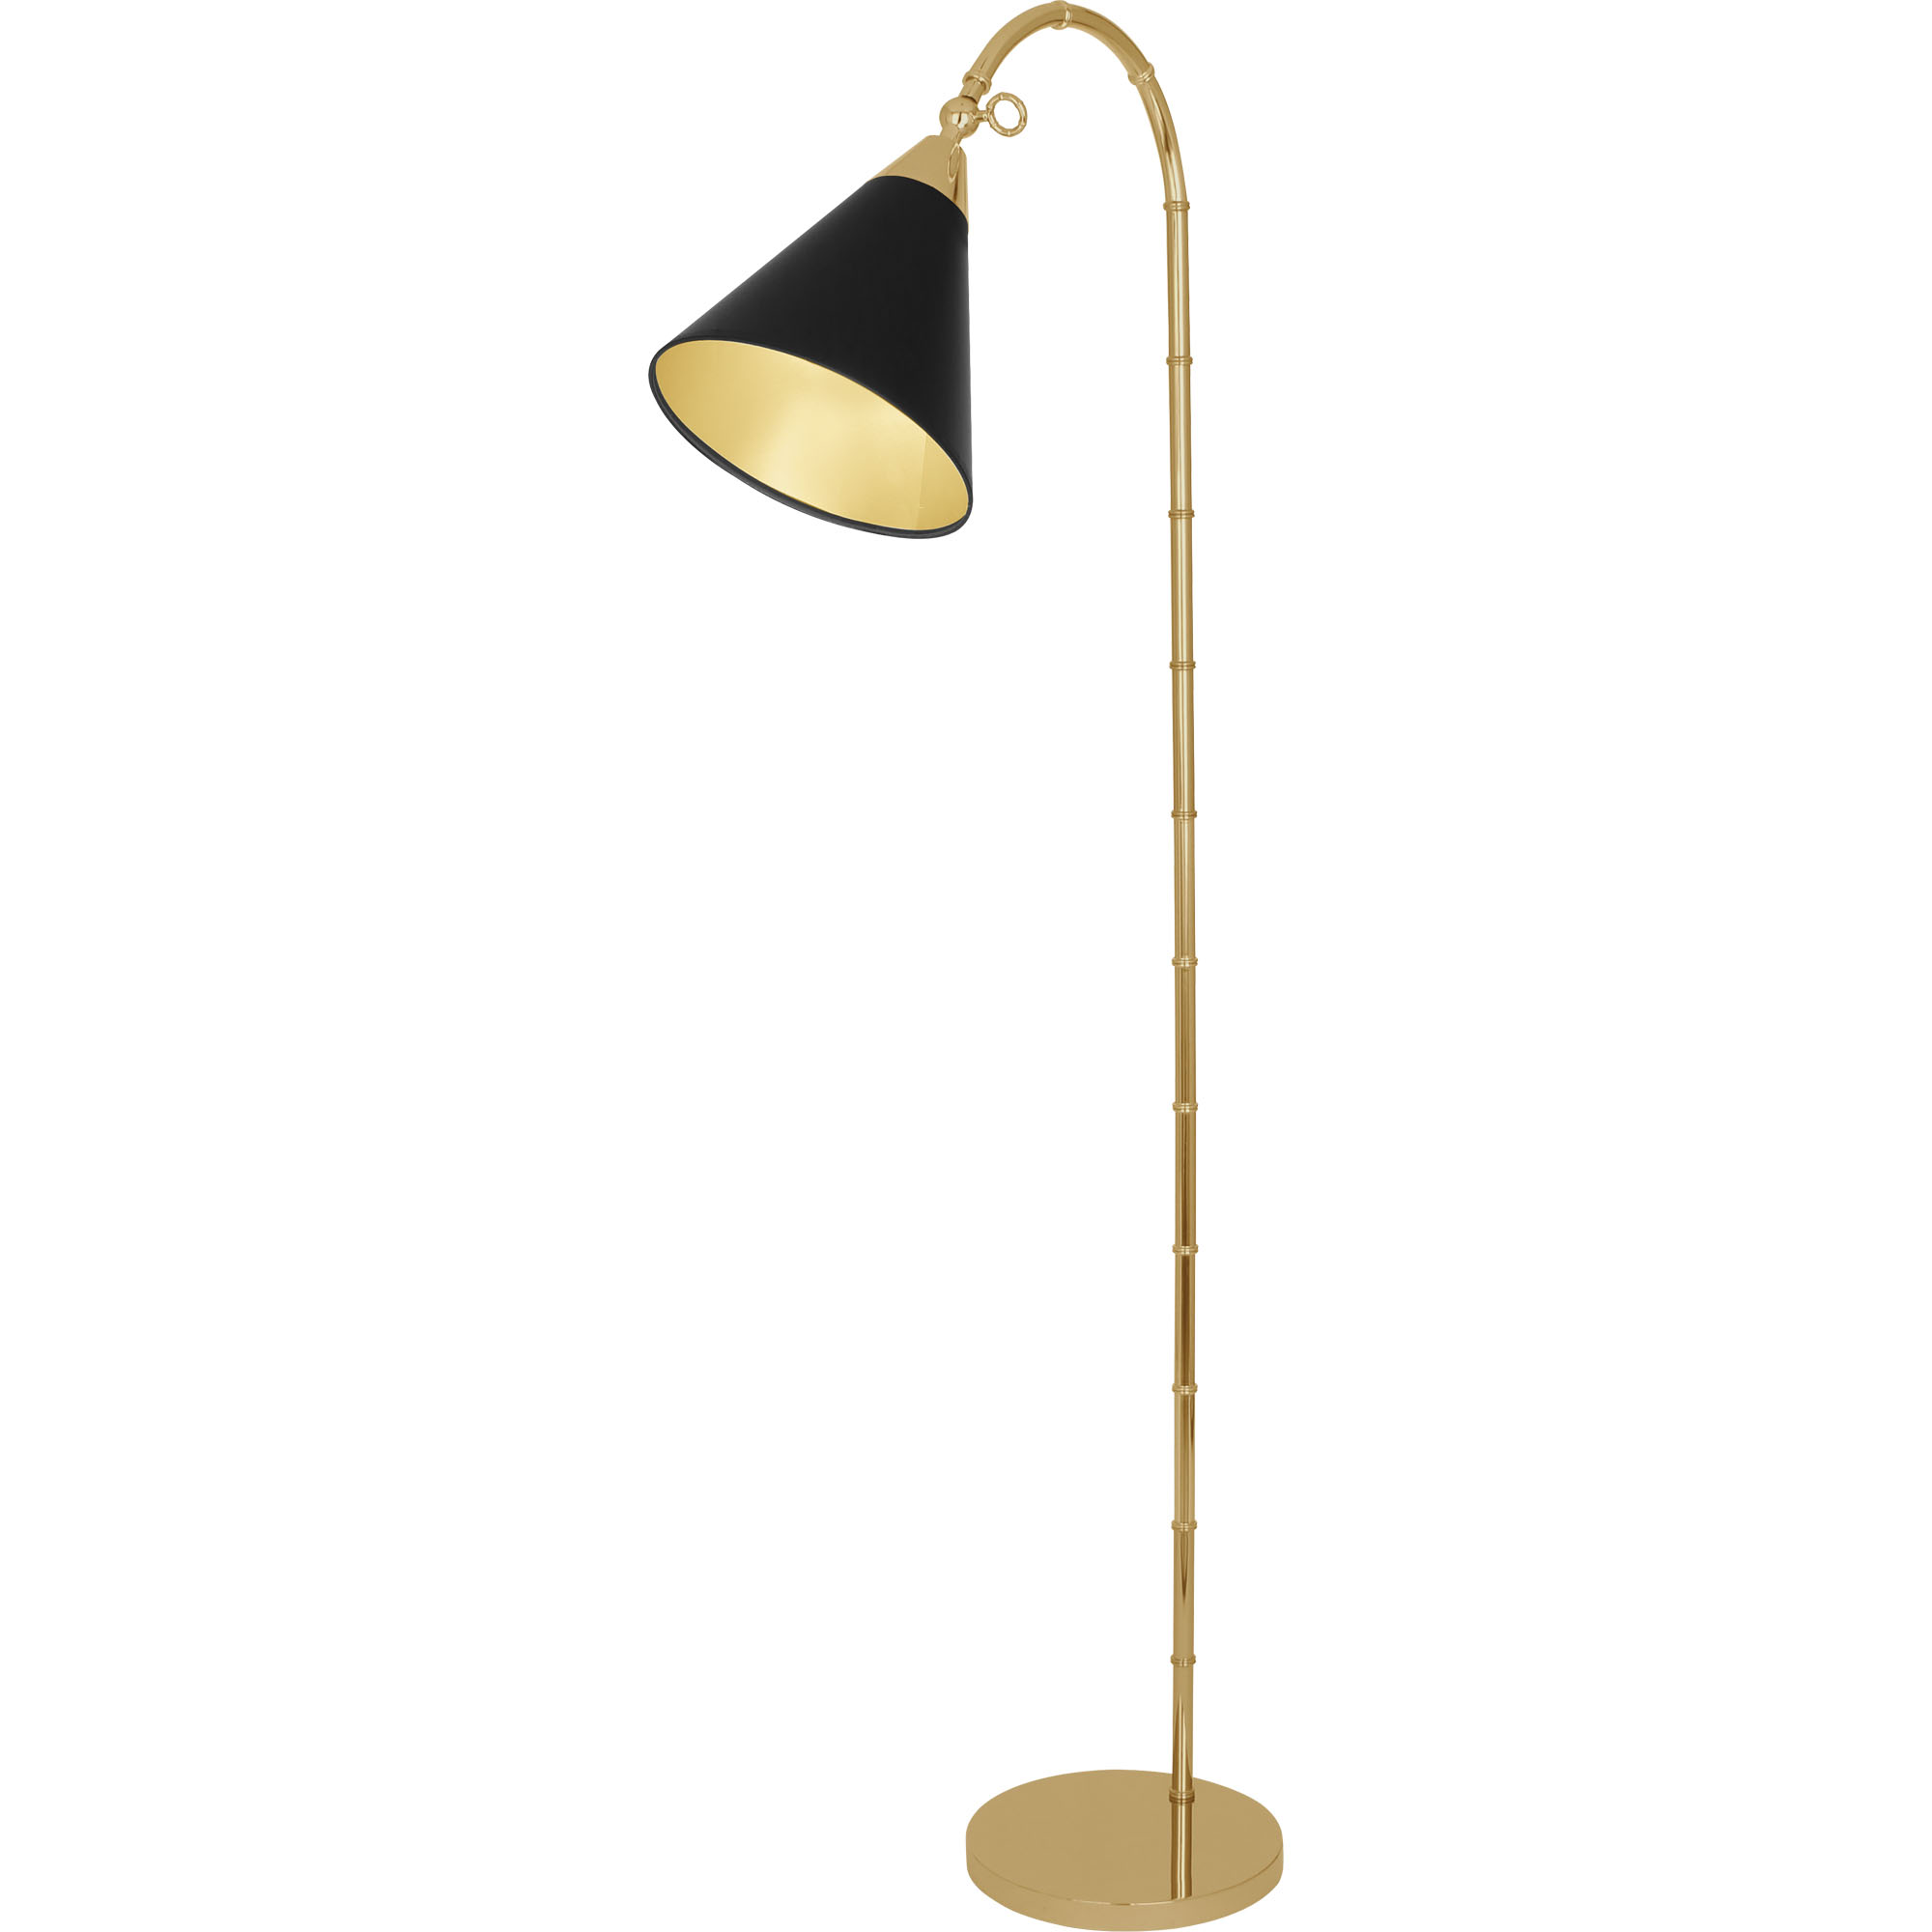 Jonathan Adler Meurice Floor Lamp Style #645B